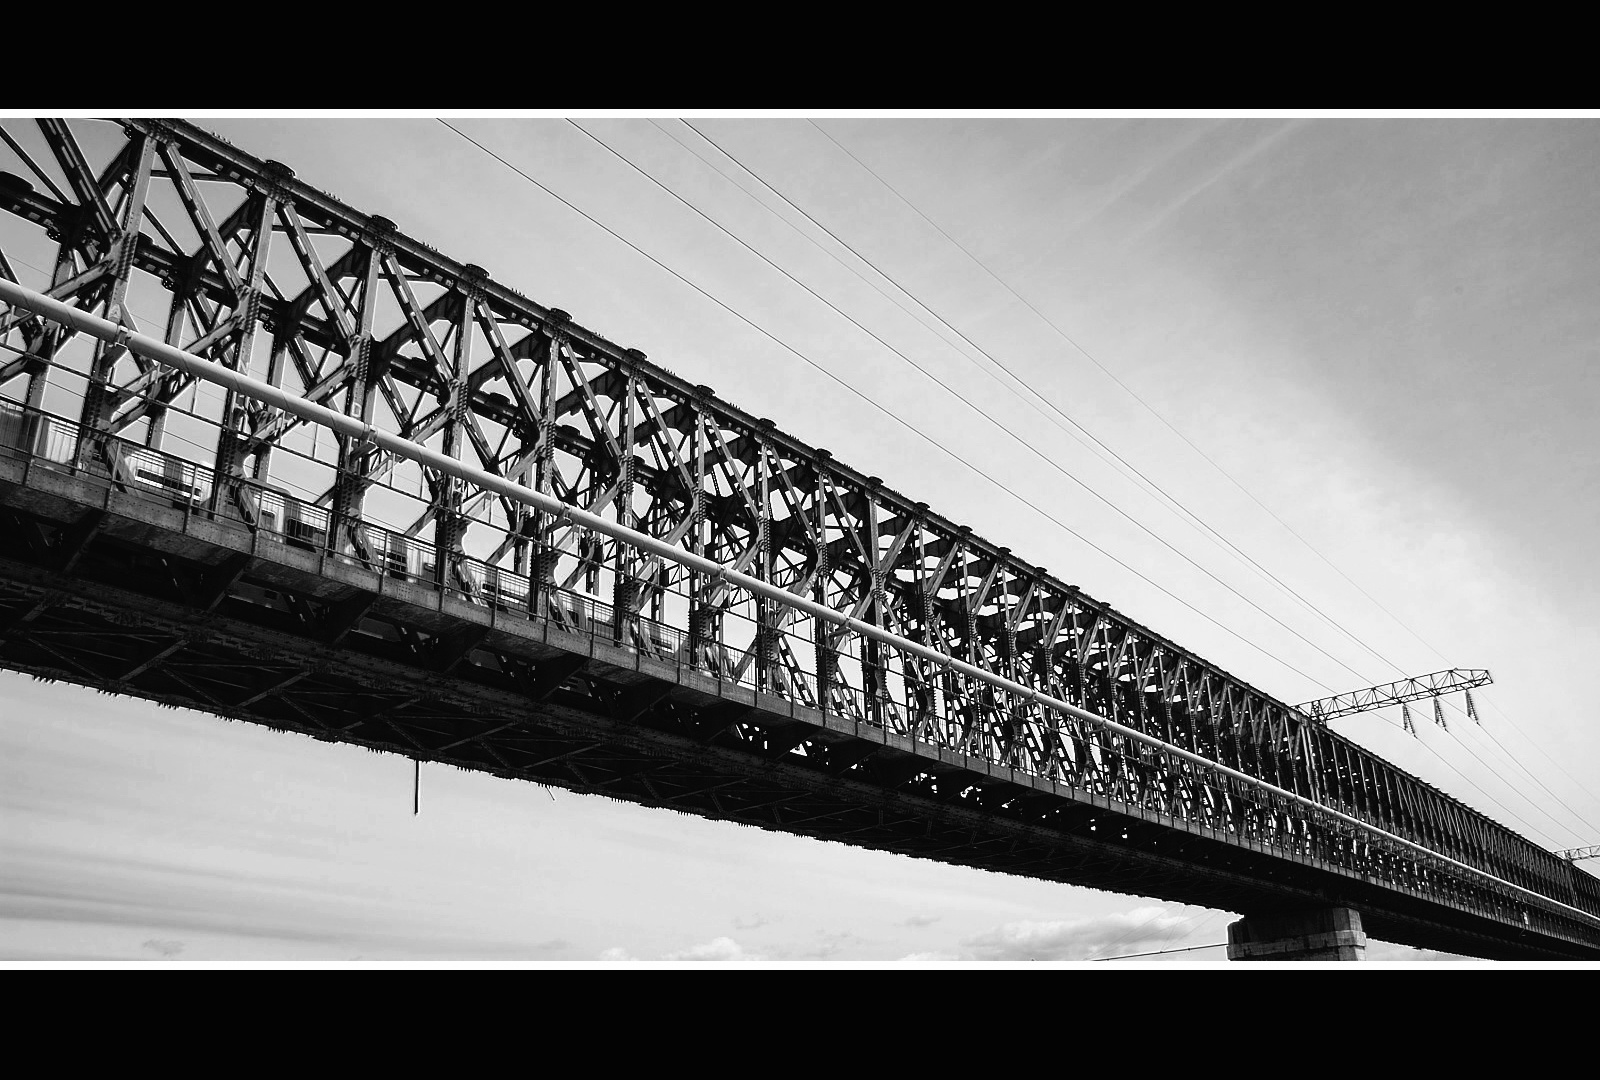 railway bridge / Északi vasúti összekötő híd